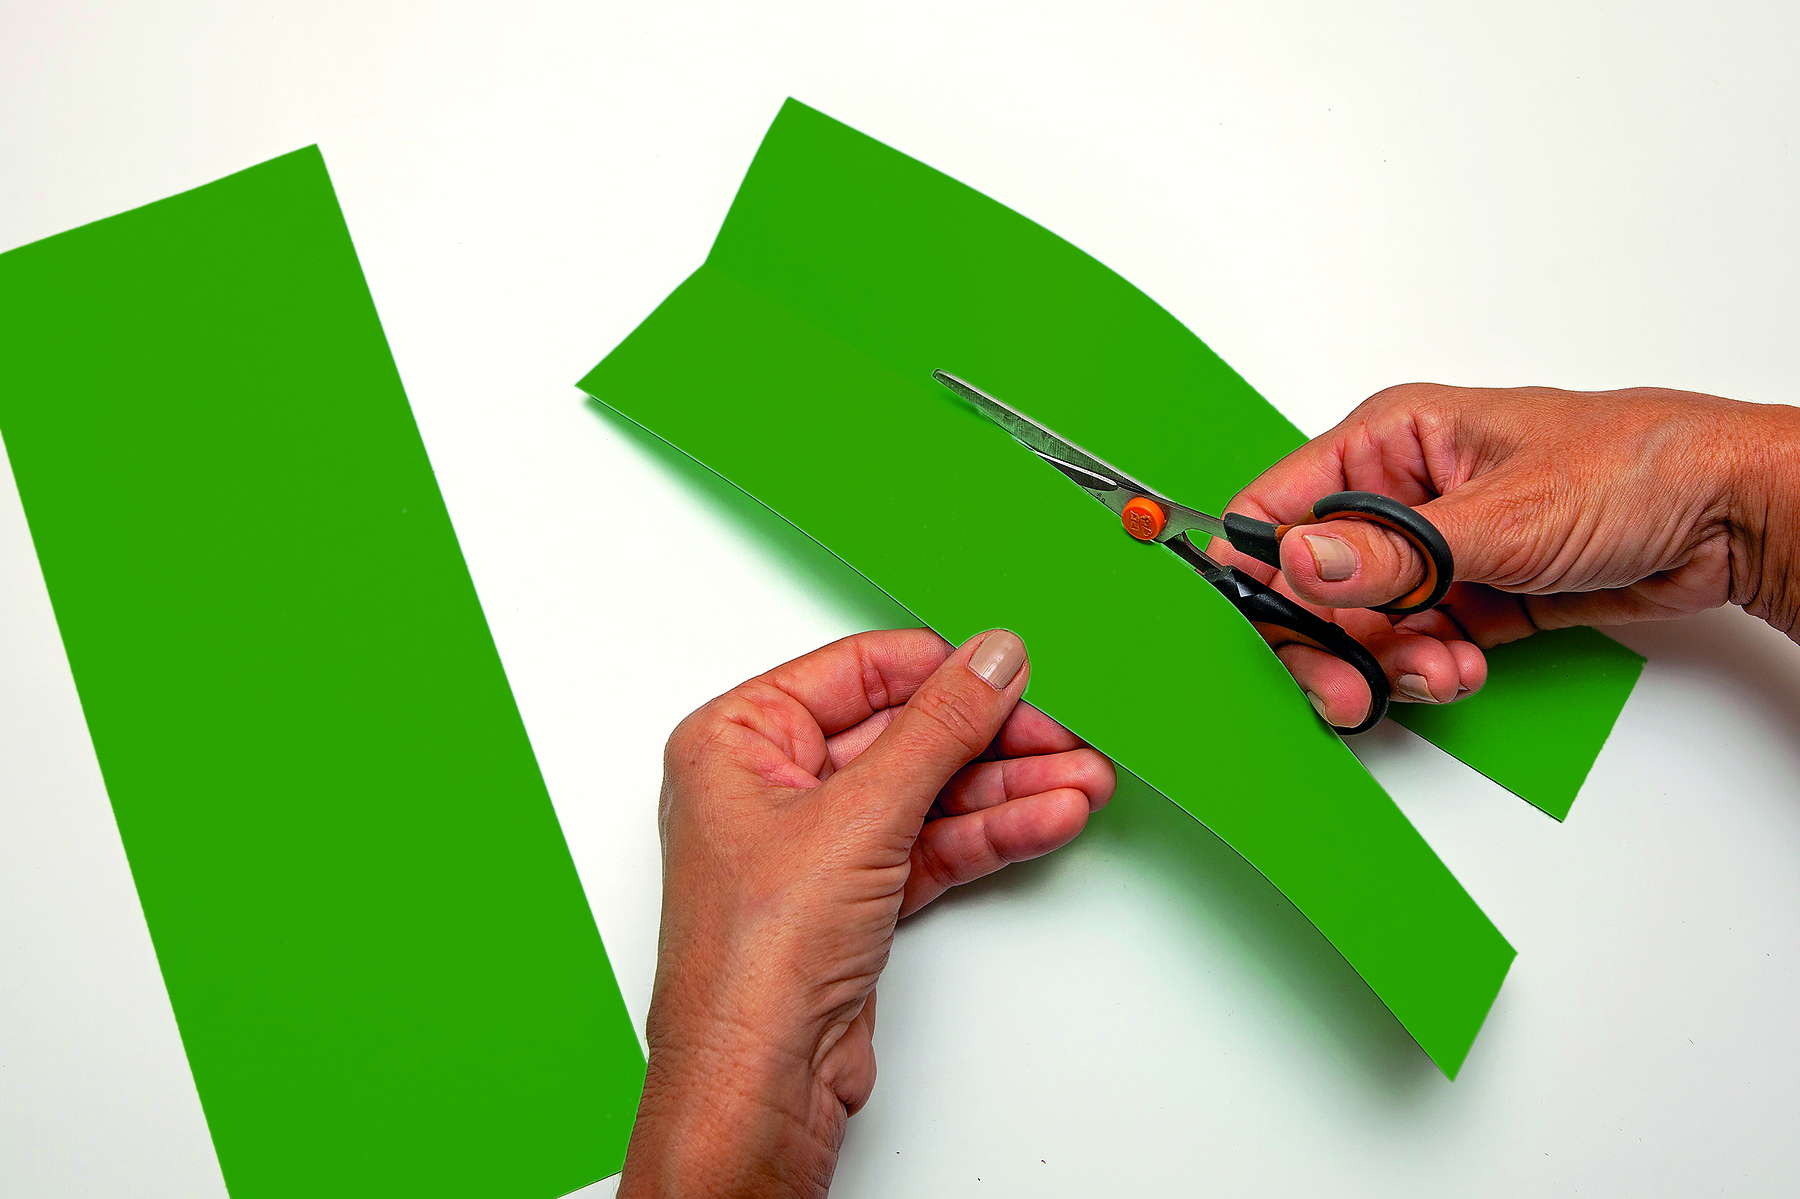 Fotografia. Detalhe de mãos recortando tiras de papel verde com tesoura. O papel contém uma dobradura bem ao centro, que guia o recorte com a tesoura.